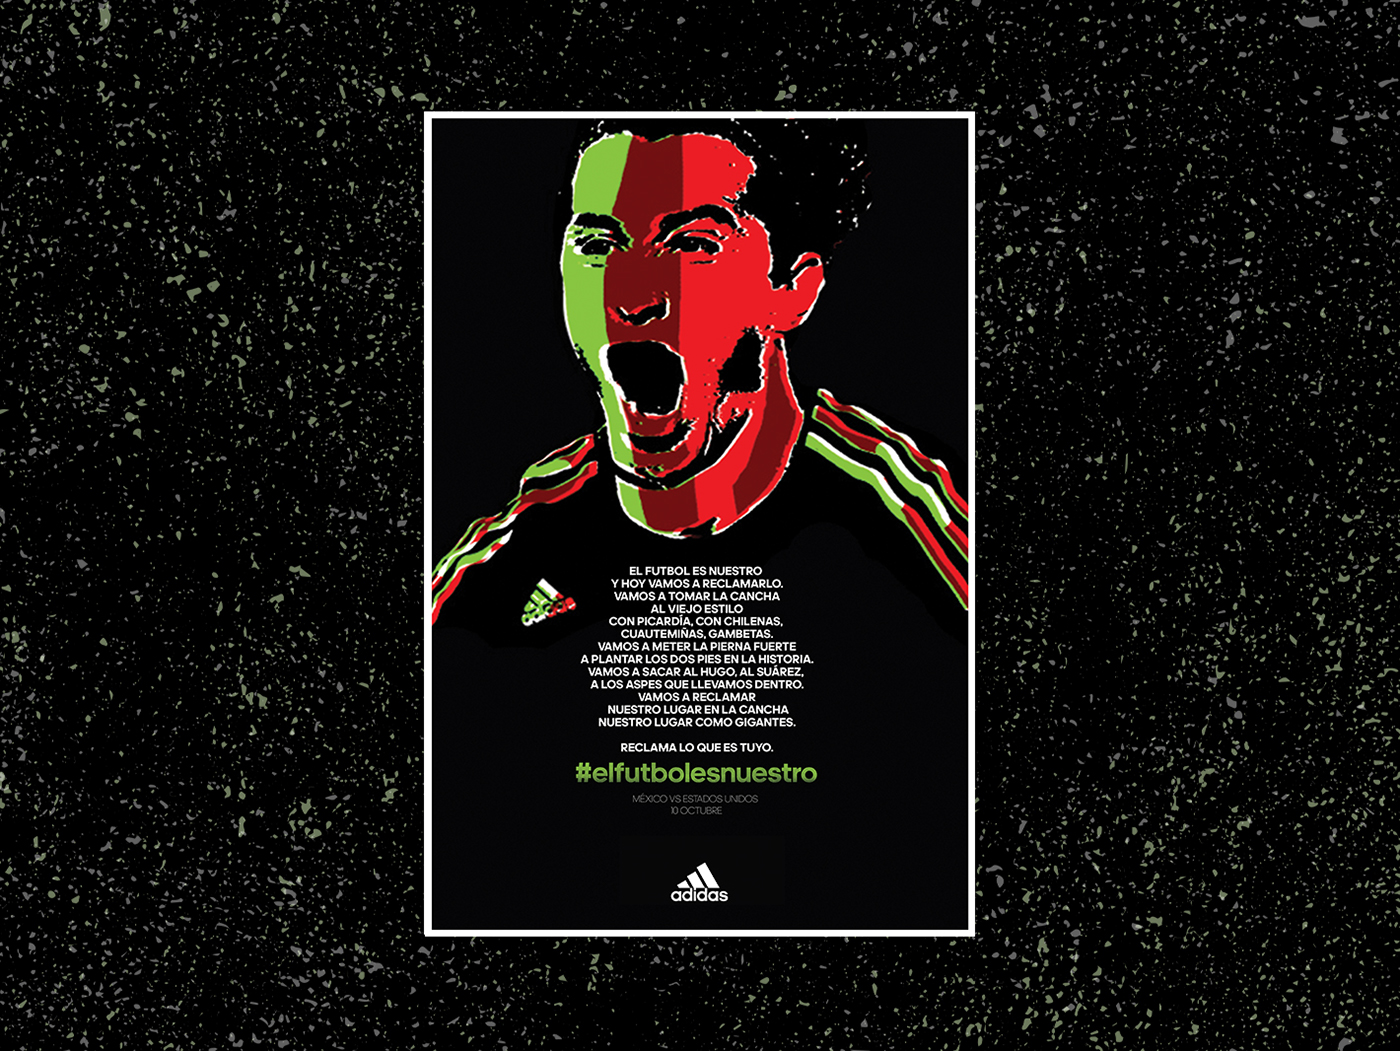 Futbol adidas mexico mundial world cup soccer seleccion mexcicana el Tri poster